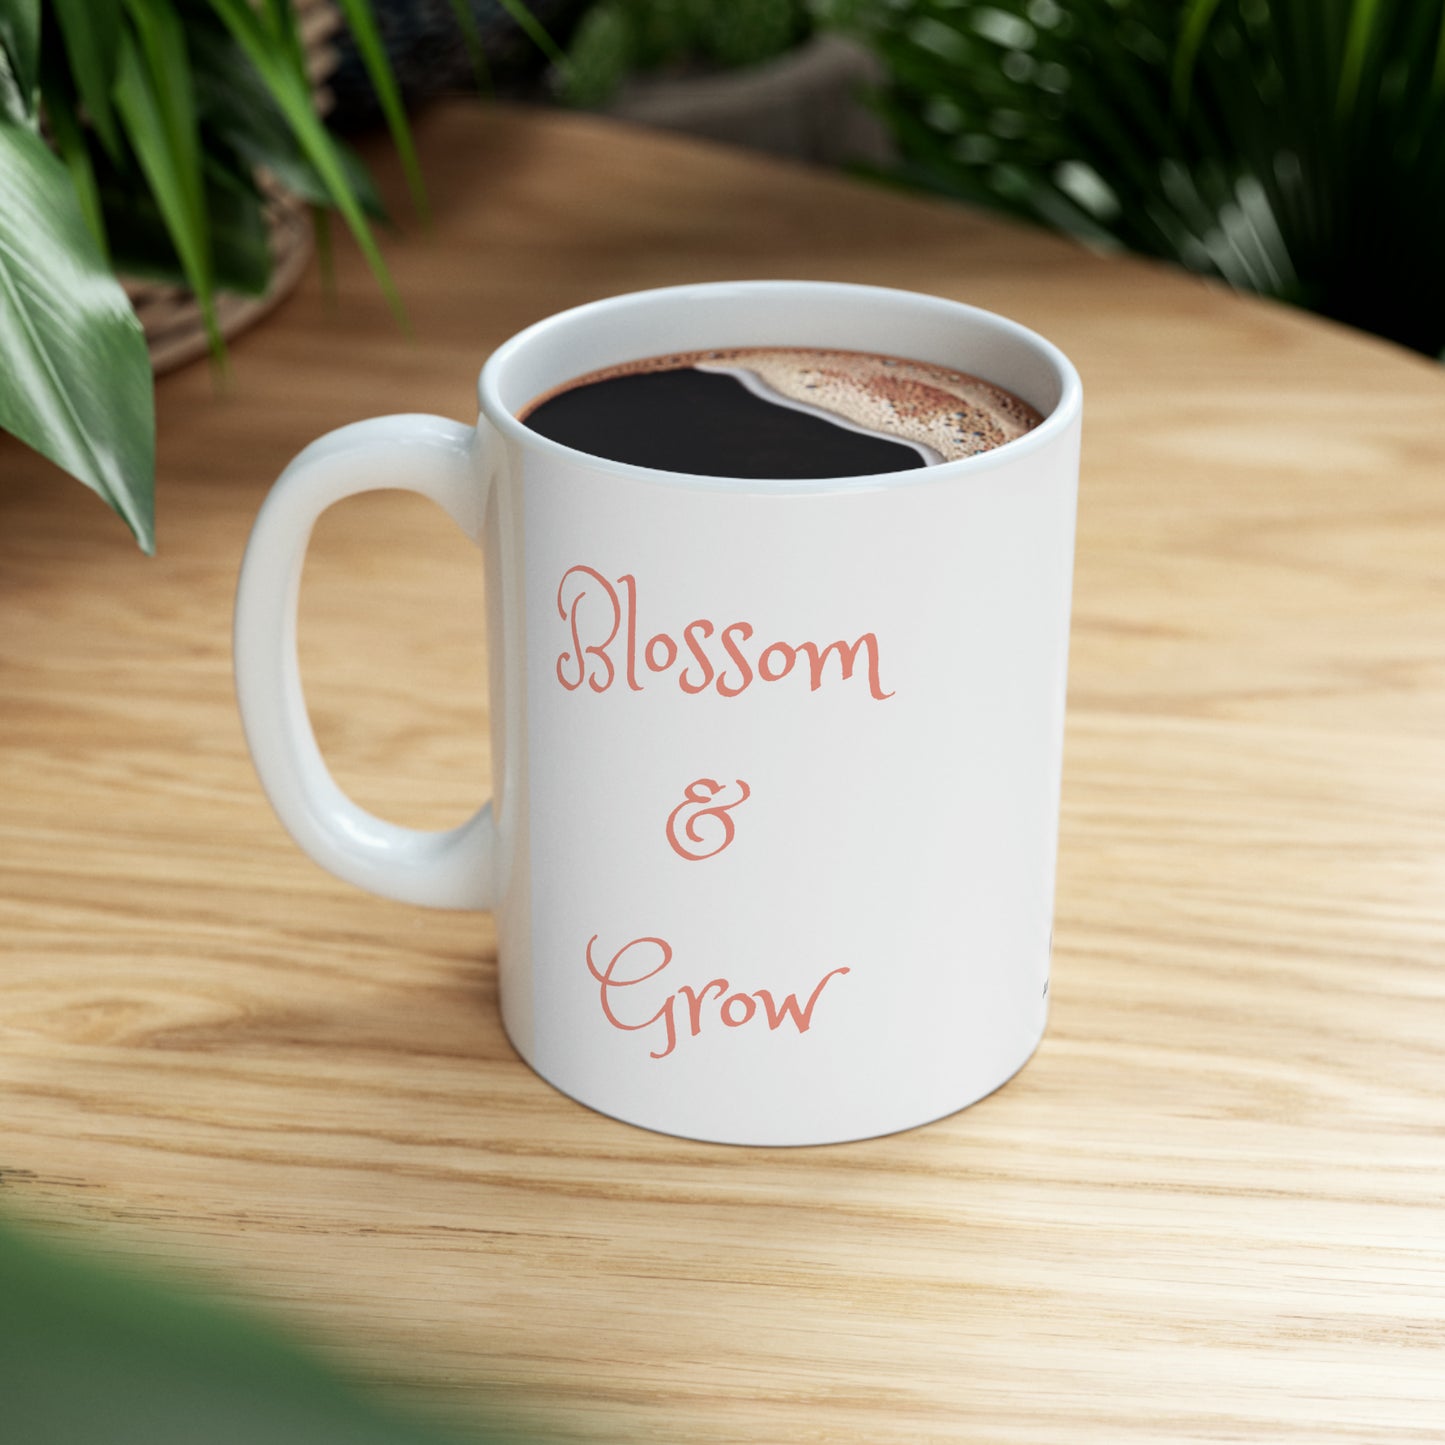 Blossom and Grow- Mug